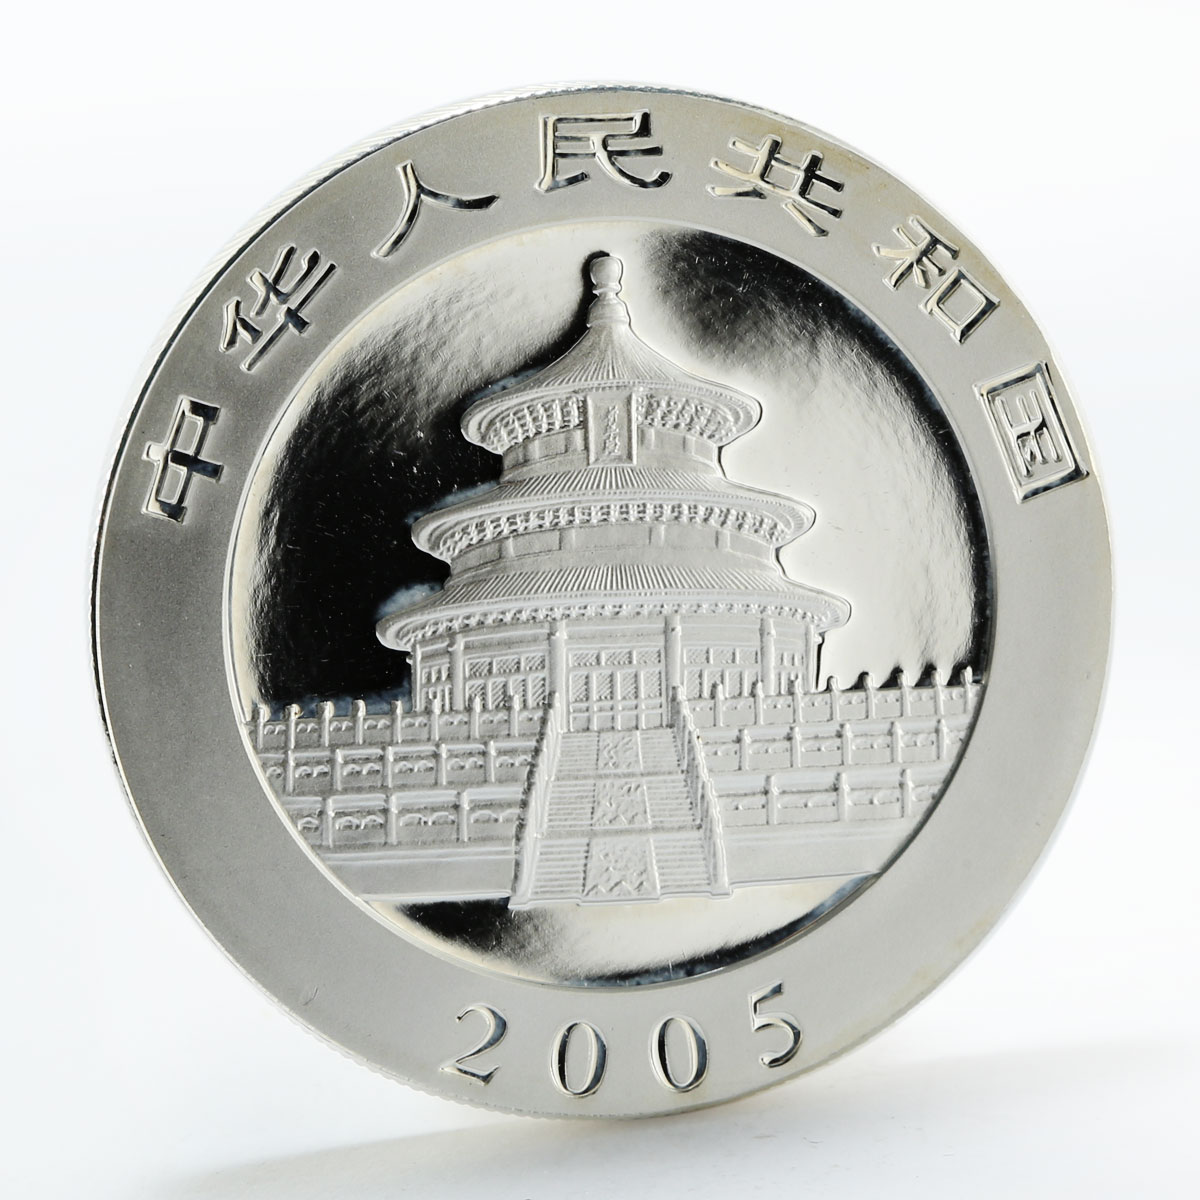 China 10 yuan Panda Series family proof silver coin 2005